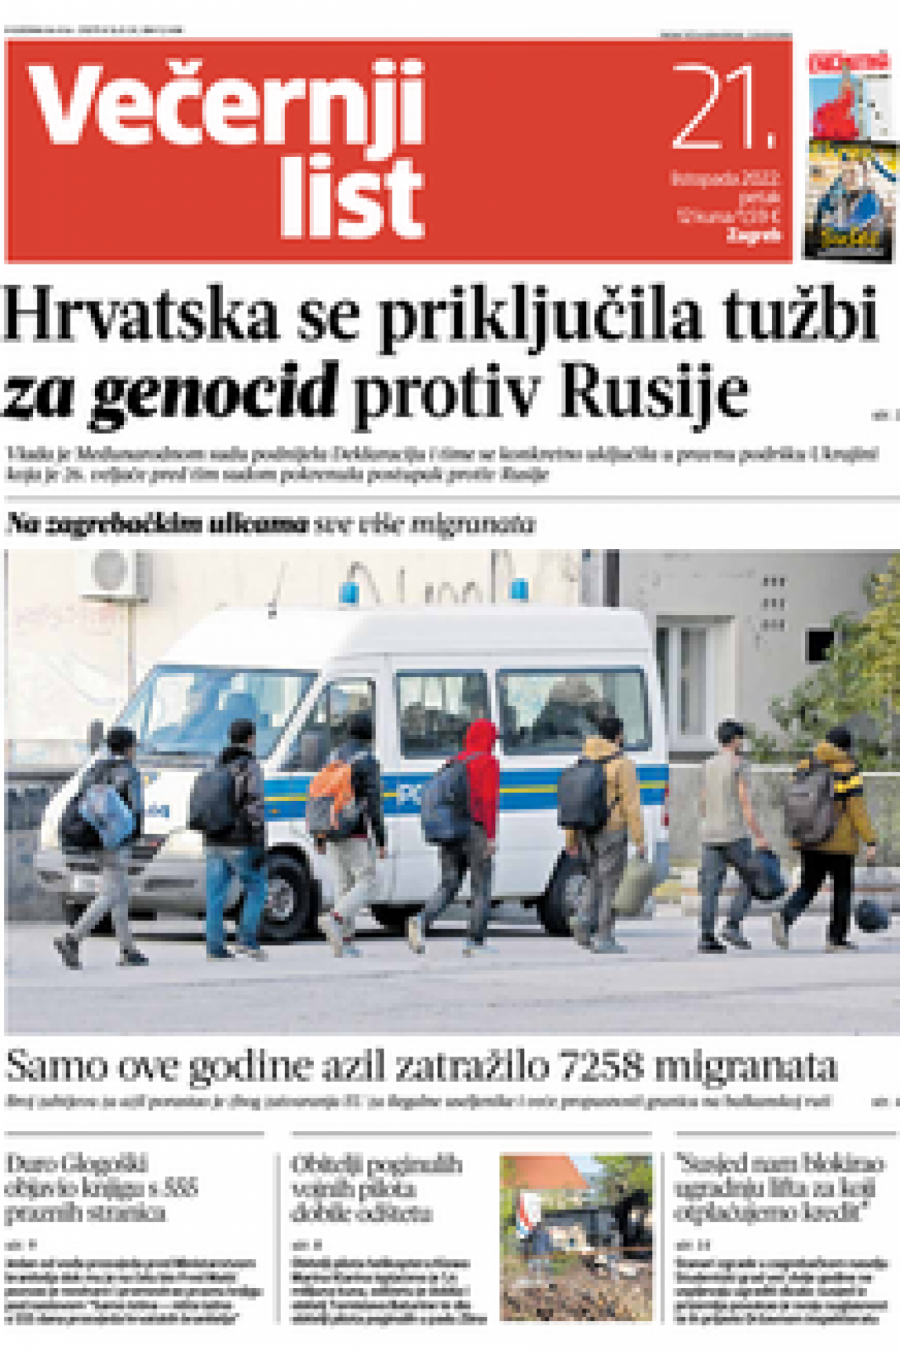 USTAŠE KRIJU KRVAVE TRAGOVE! Hrvatska se priključila tužbi protiv Rusije da bi izbrisala genocid nad Srbima!